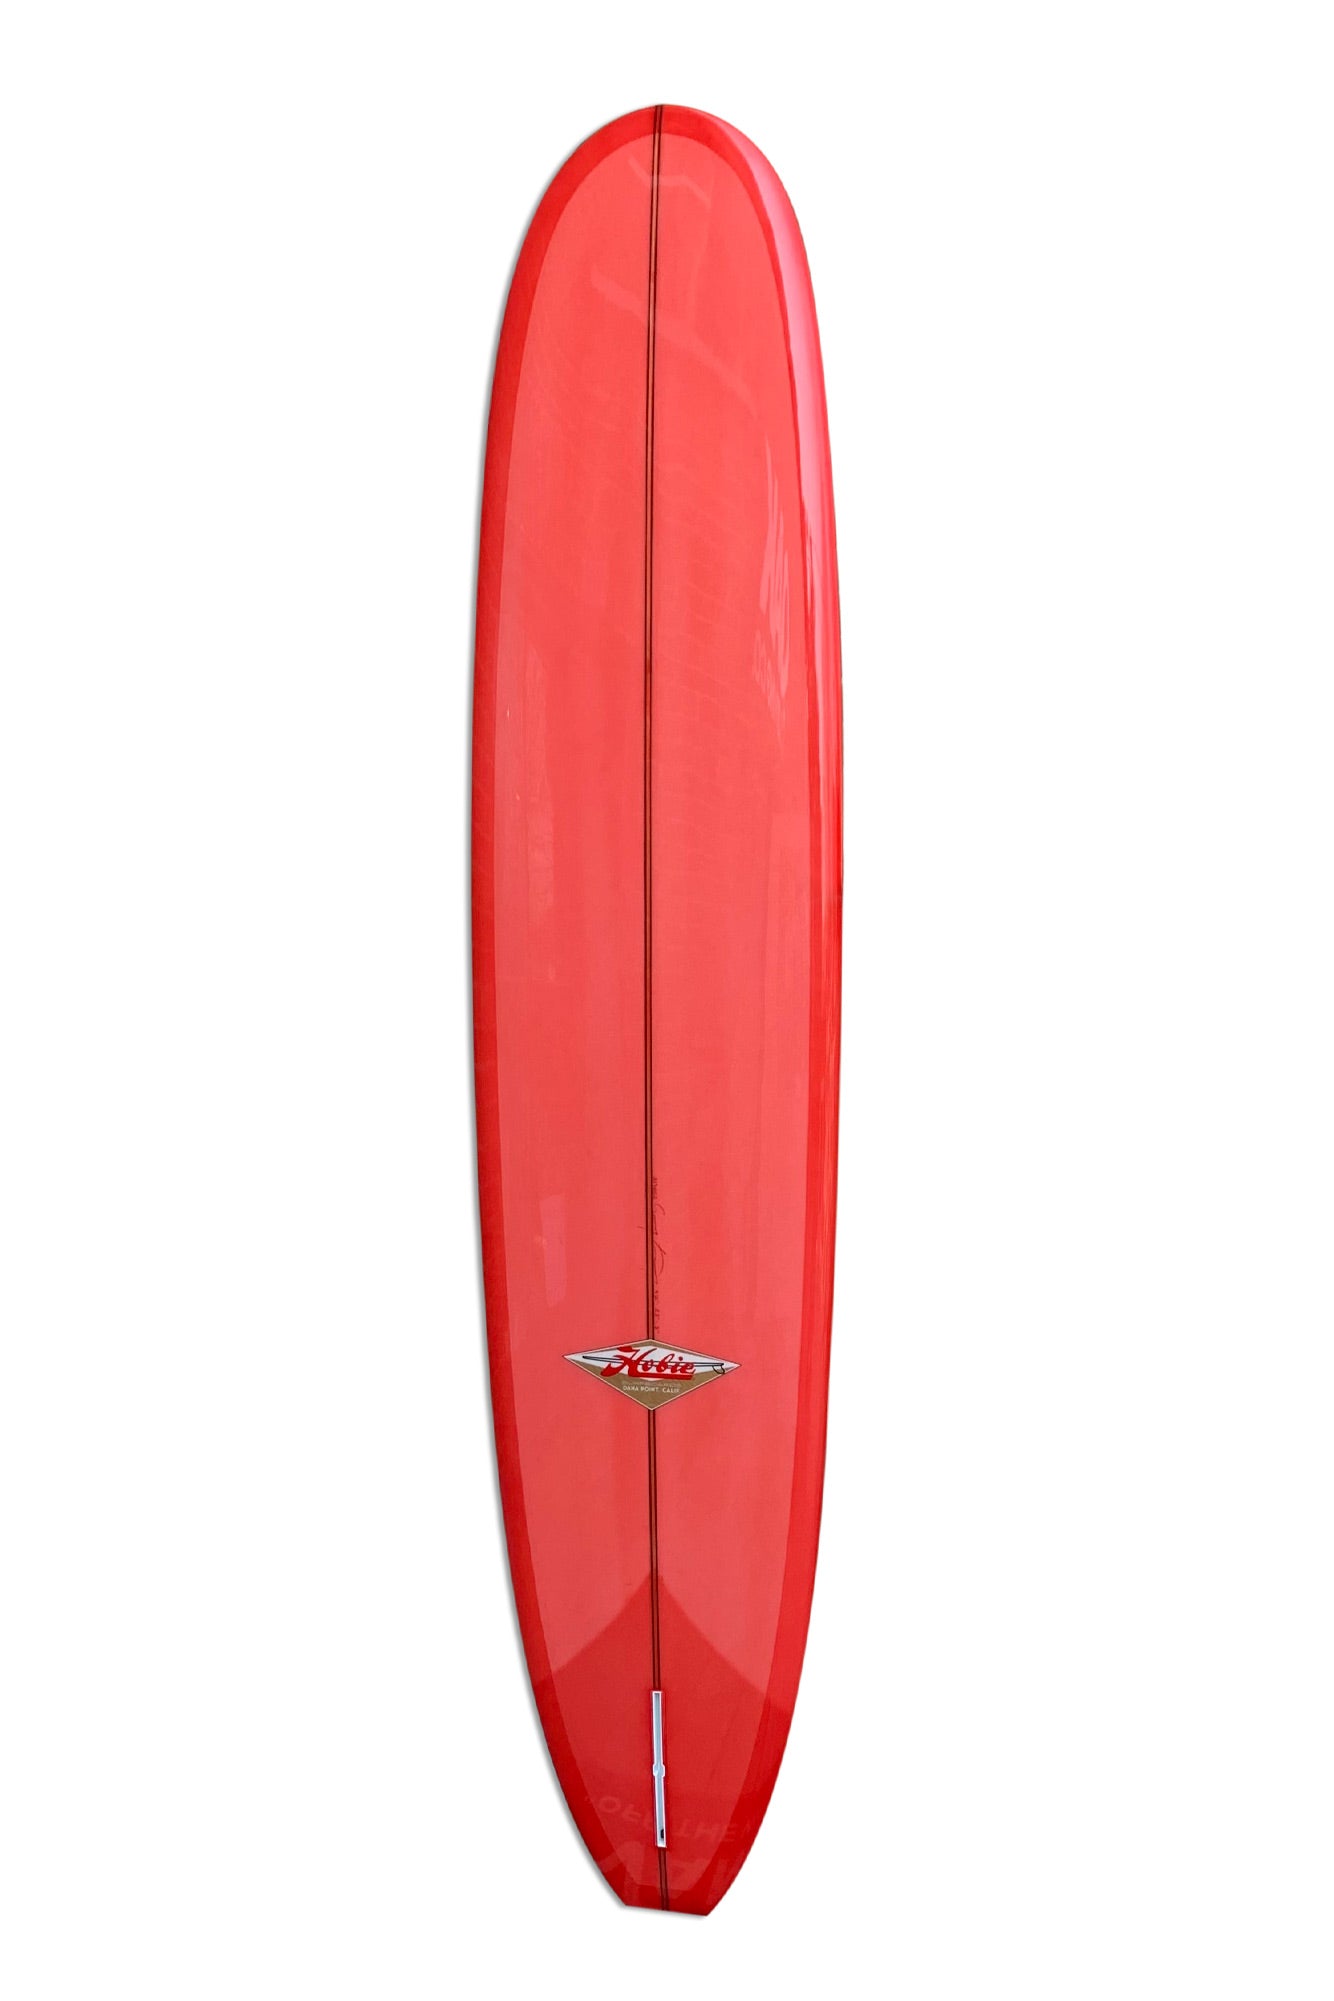 xeno surfboard Rose 7.11 発送可マグネットネイル